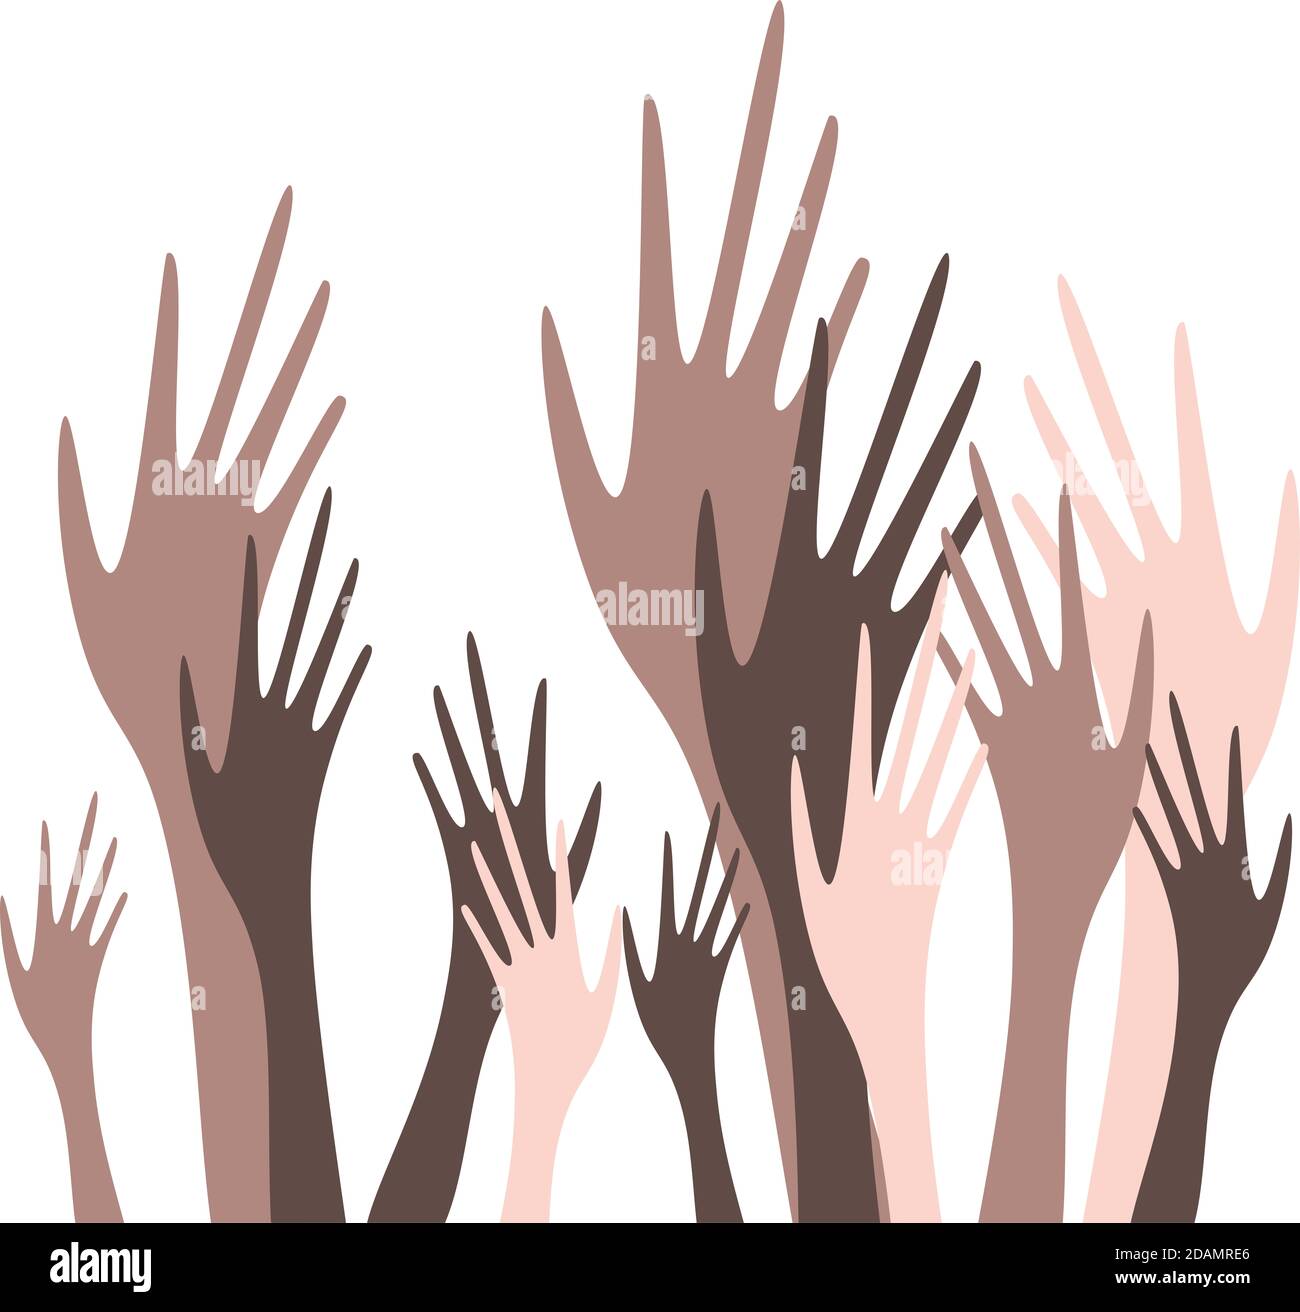 Universelle Designvorlage für Nachrichtenflyer, Ankündigungen zum Thema Abstimmung und Antirassismus. Hände mit unterschiedlichen Hauttönen werden angehoben. Stockfoto